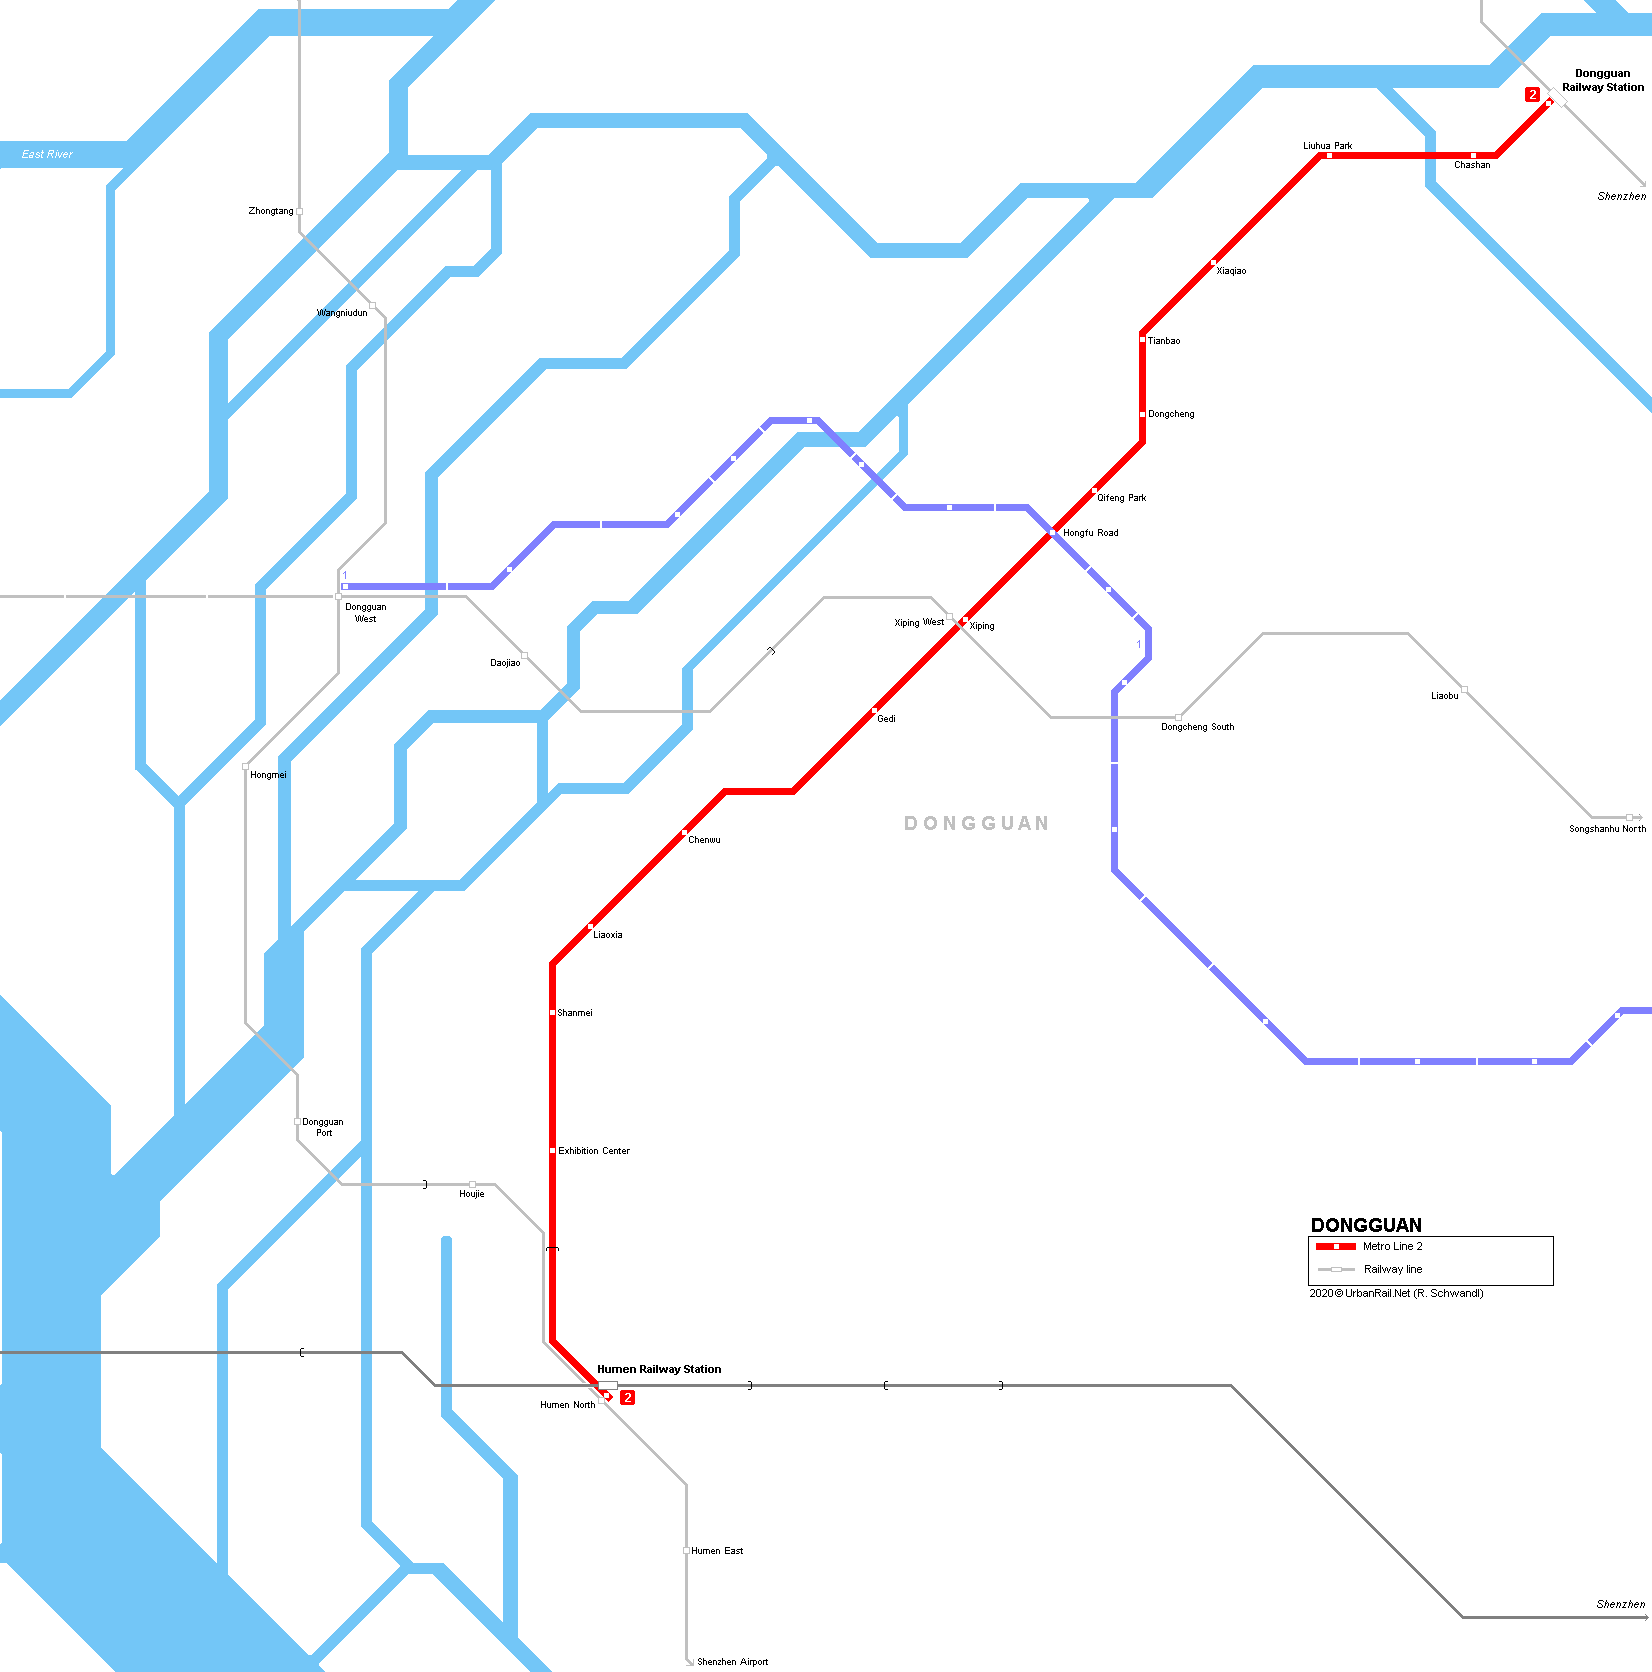 Dongguan metro map